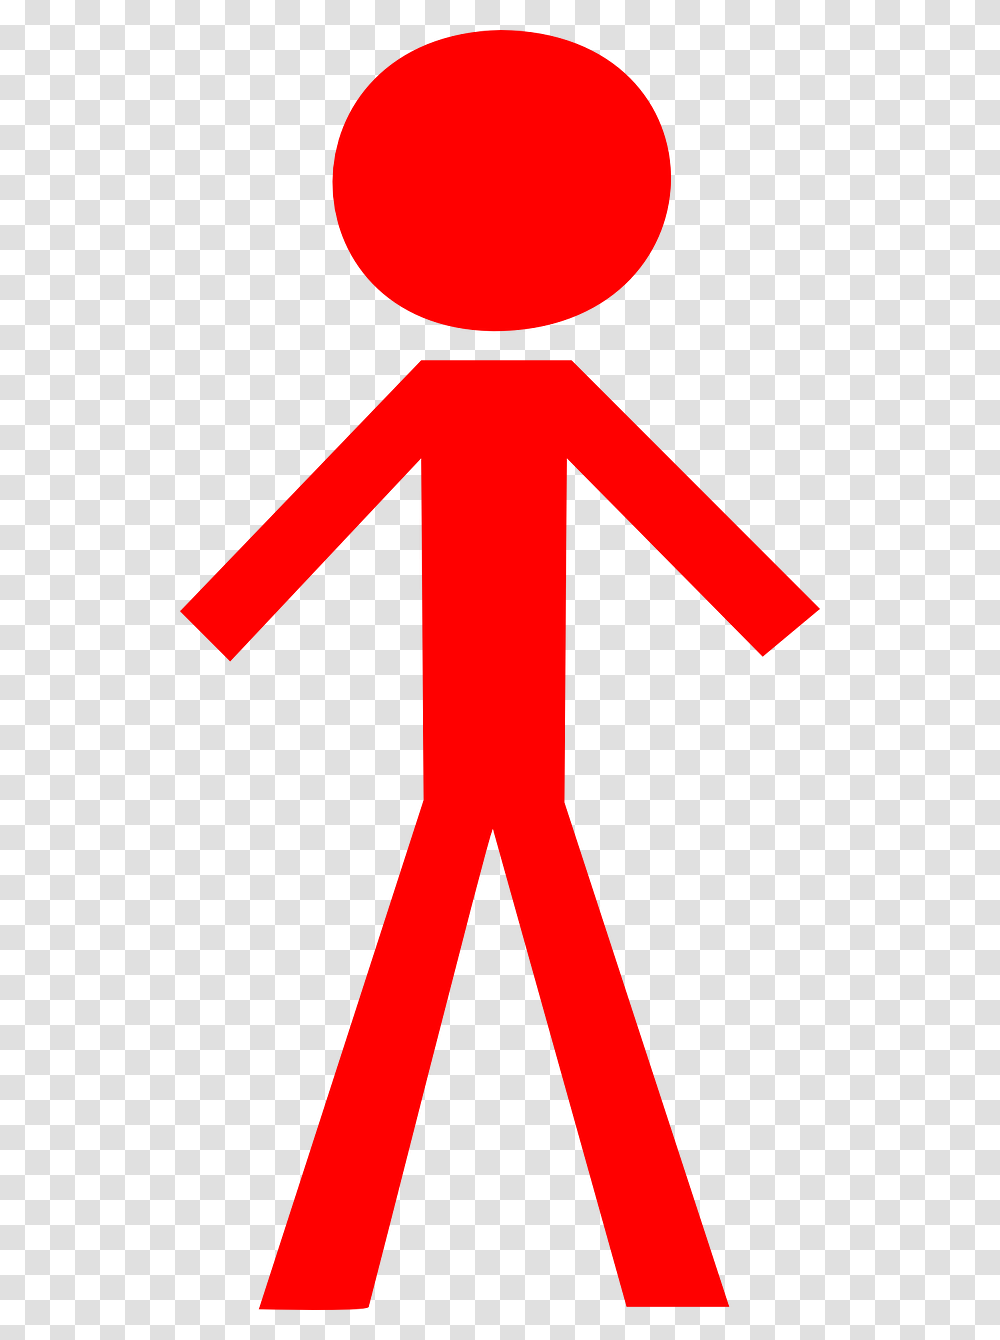 Red Man Clip Art Vector Clip Art Online Stick Figure Clip Art, Symbol, Sign, Road Sign, Cross Transparent Png